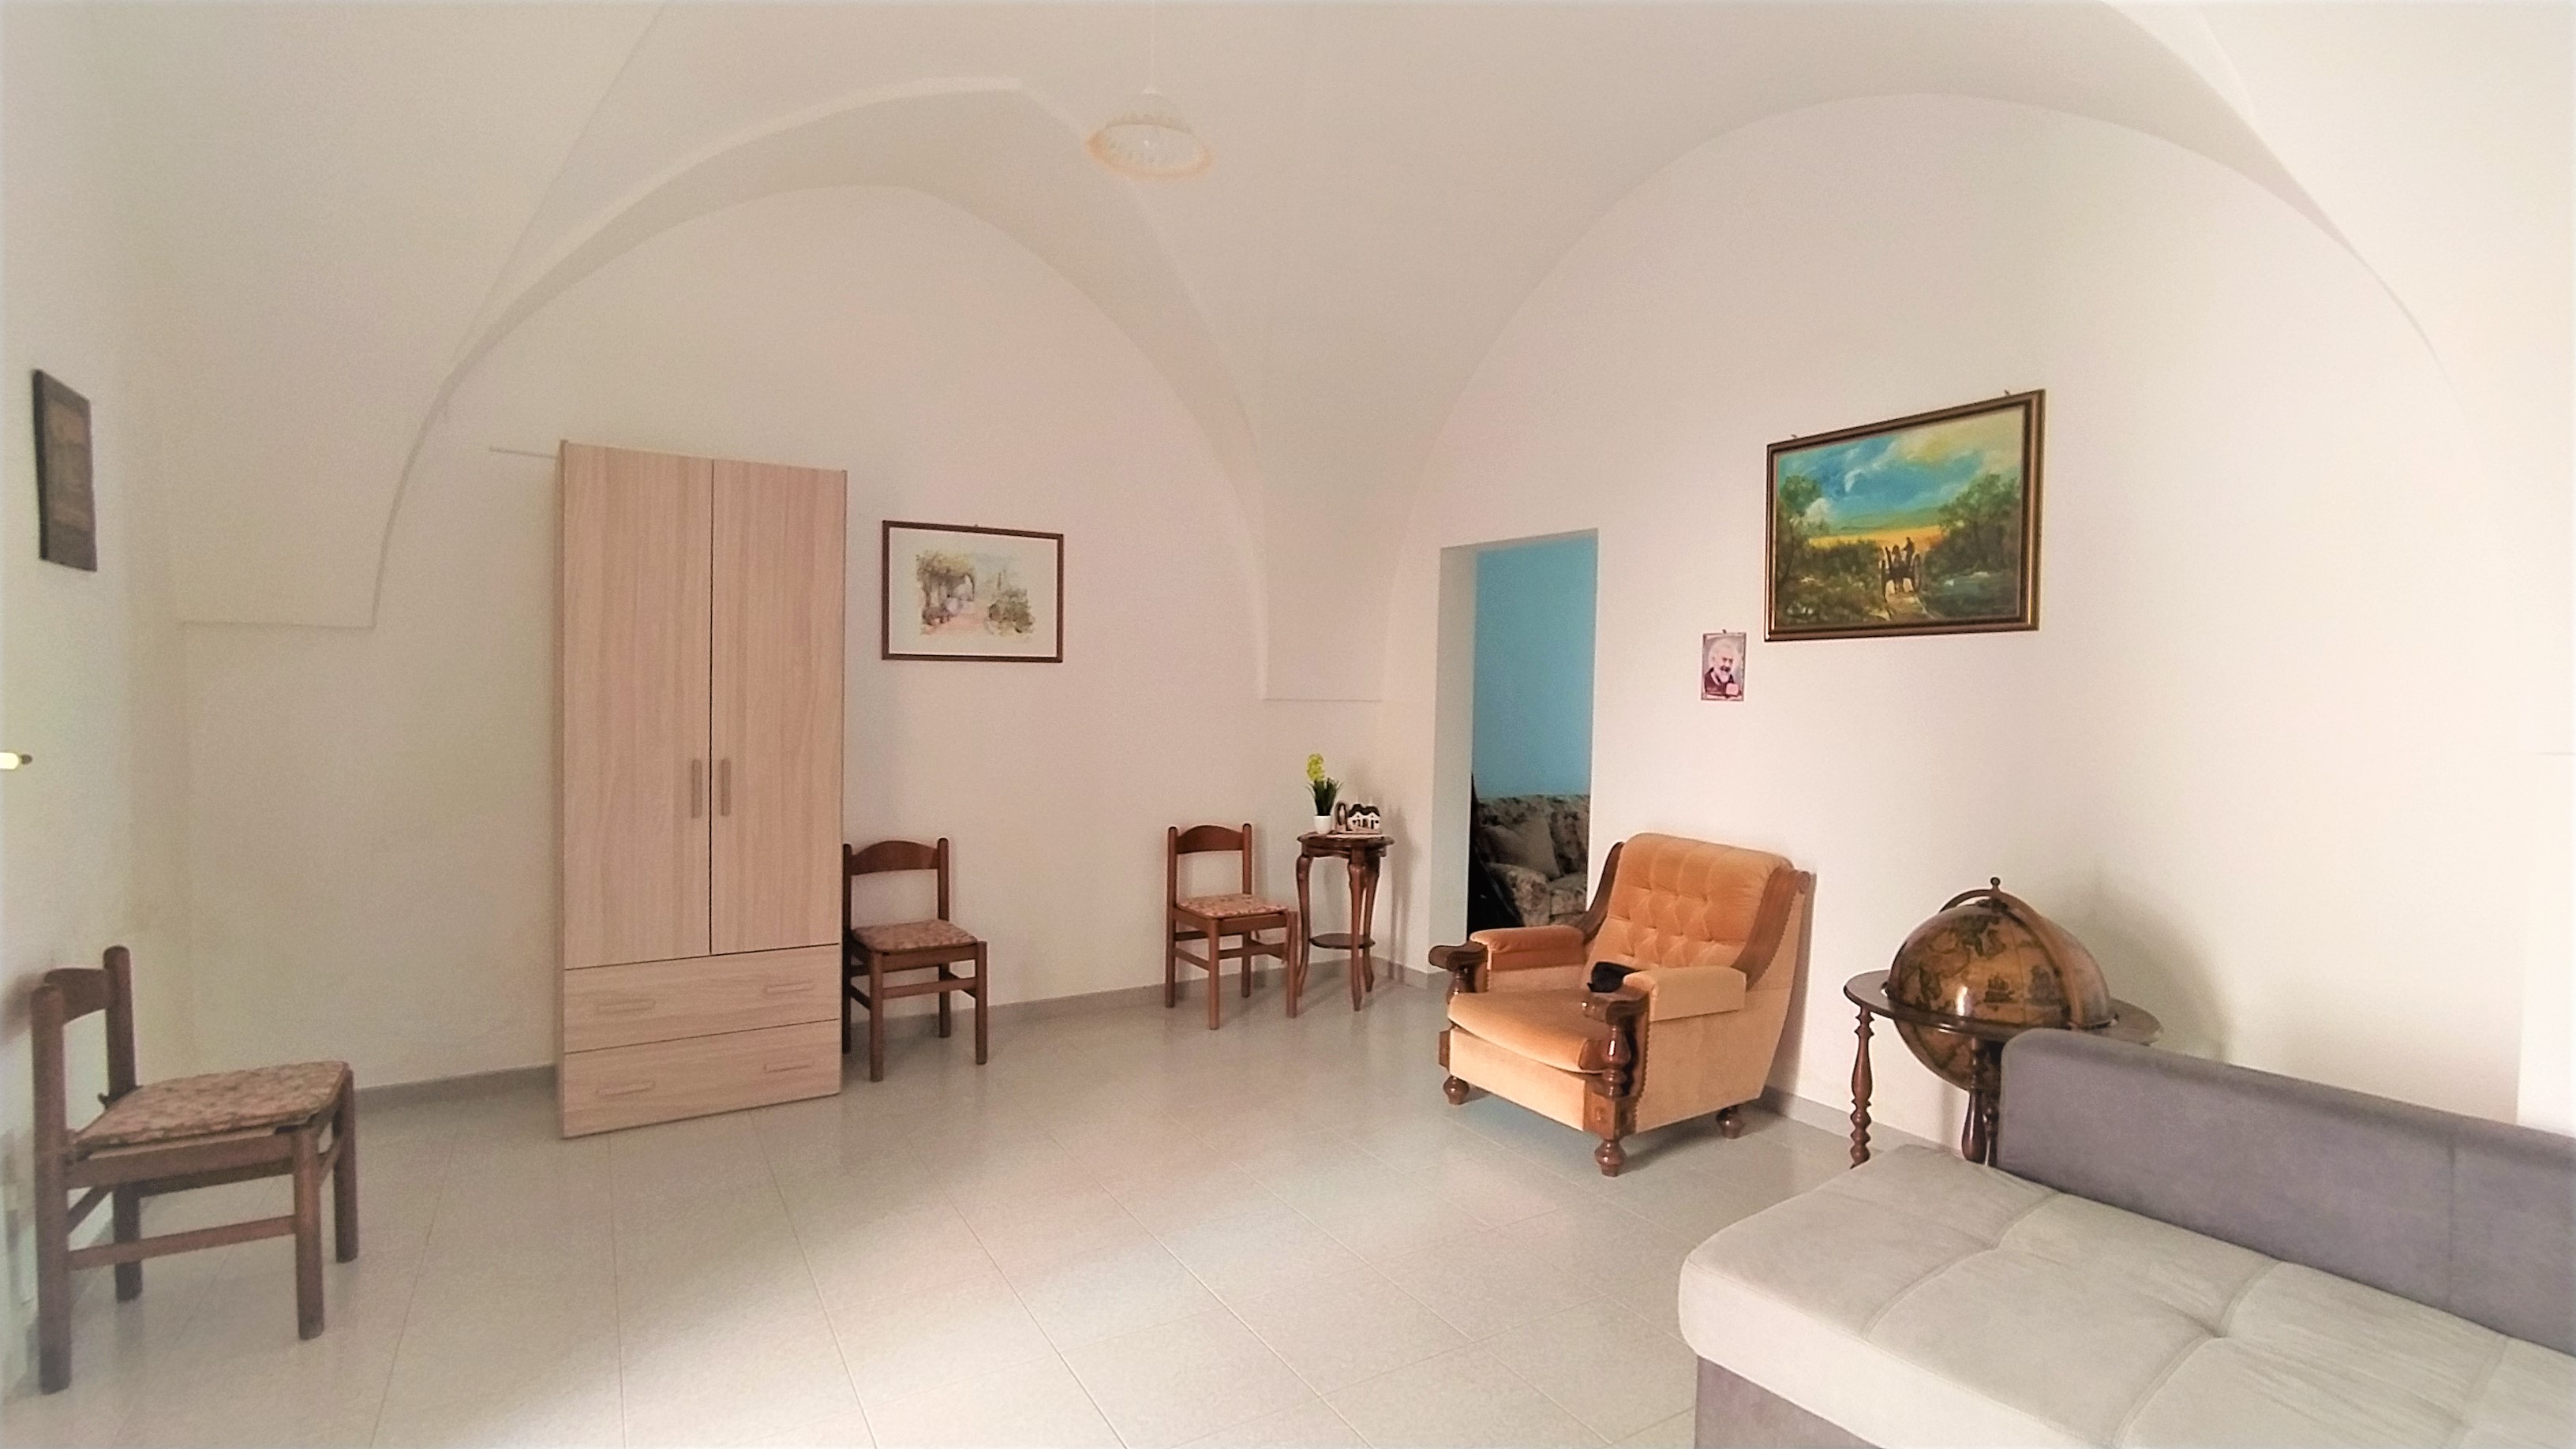 PegasoMed agenzia immobiliare San Vito dei normanni carovigno Puglia salento